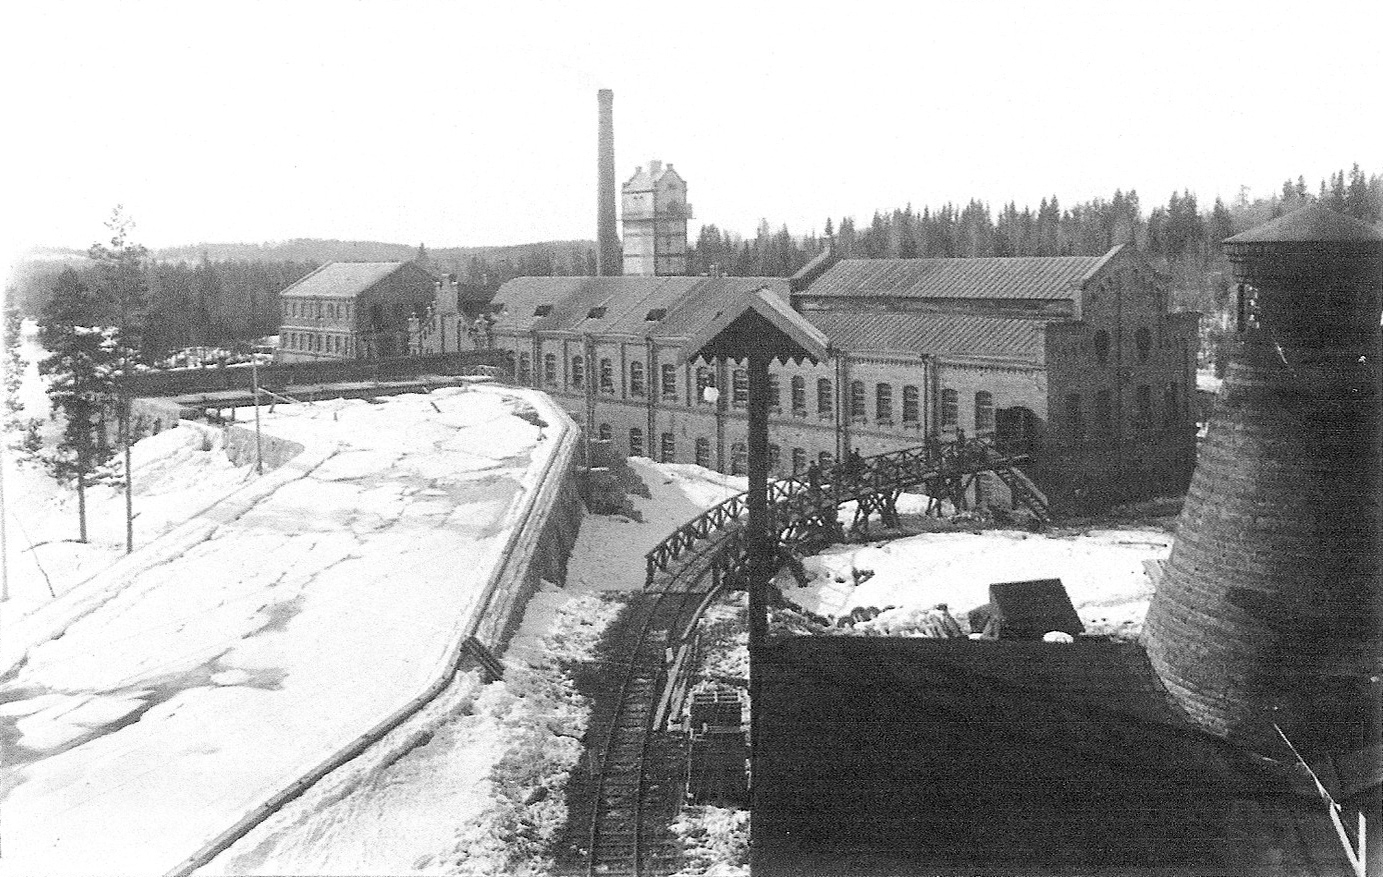 1904. Hämekoski. Factory